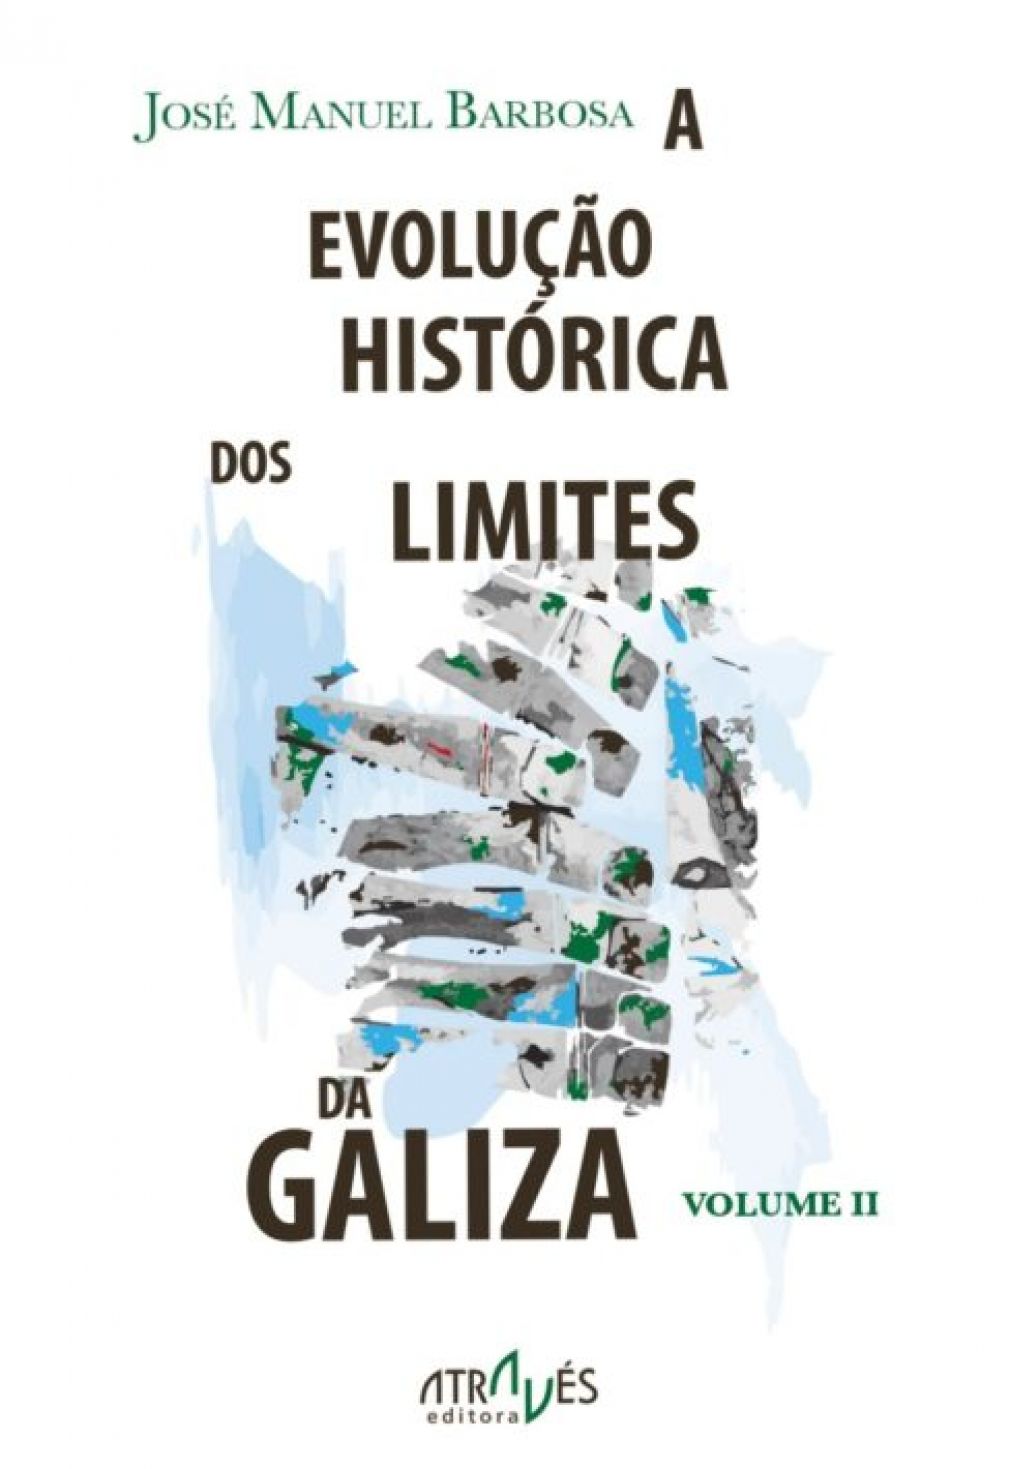 "A EVOLUÇÃO HISTÓRICA DOS LIMITES DA GALIZA (II)" Académico José M. Barbosa lança segundo volume do livro